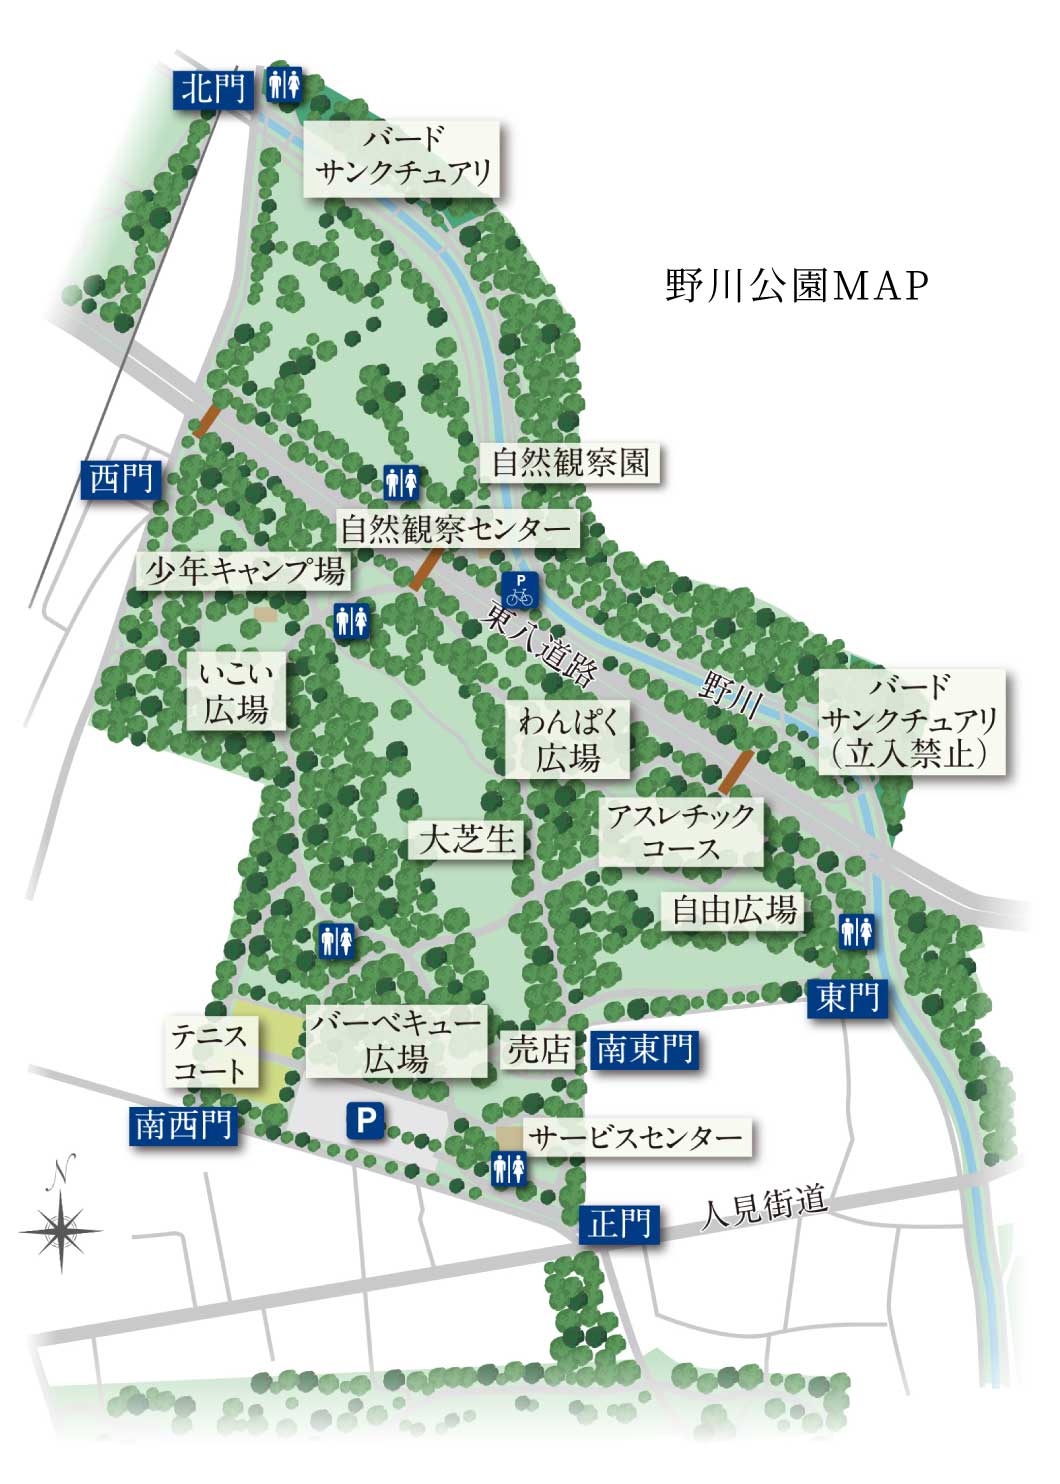 野川公園マップイラスト